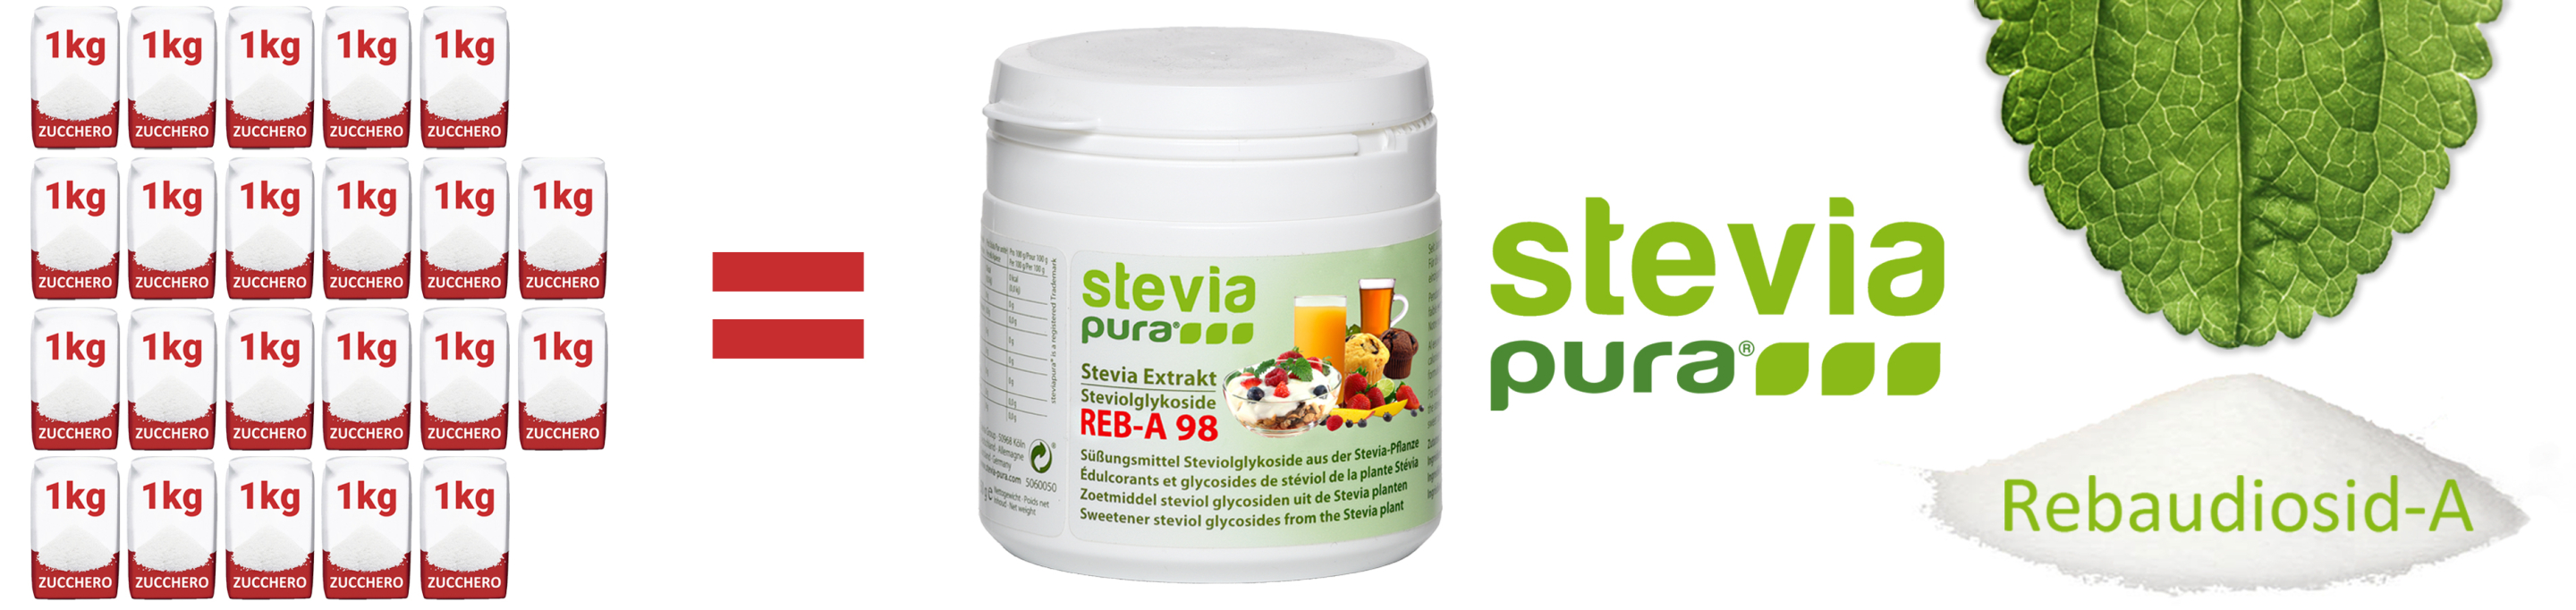 Stevia pura in polvere Rebaudioside-A 98% Estratto di...